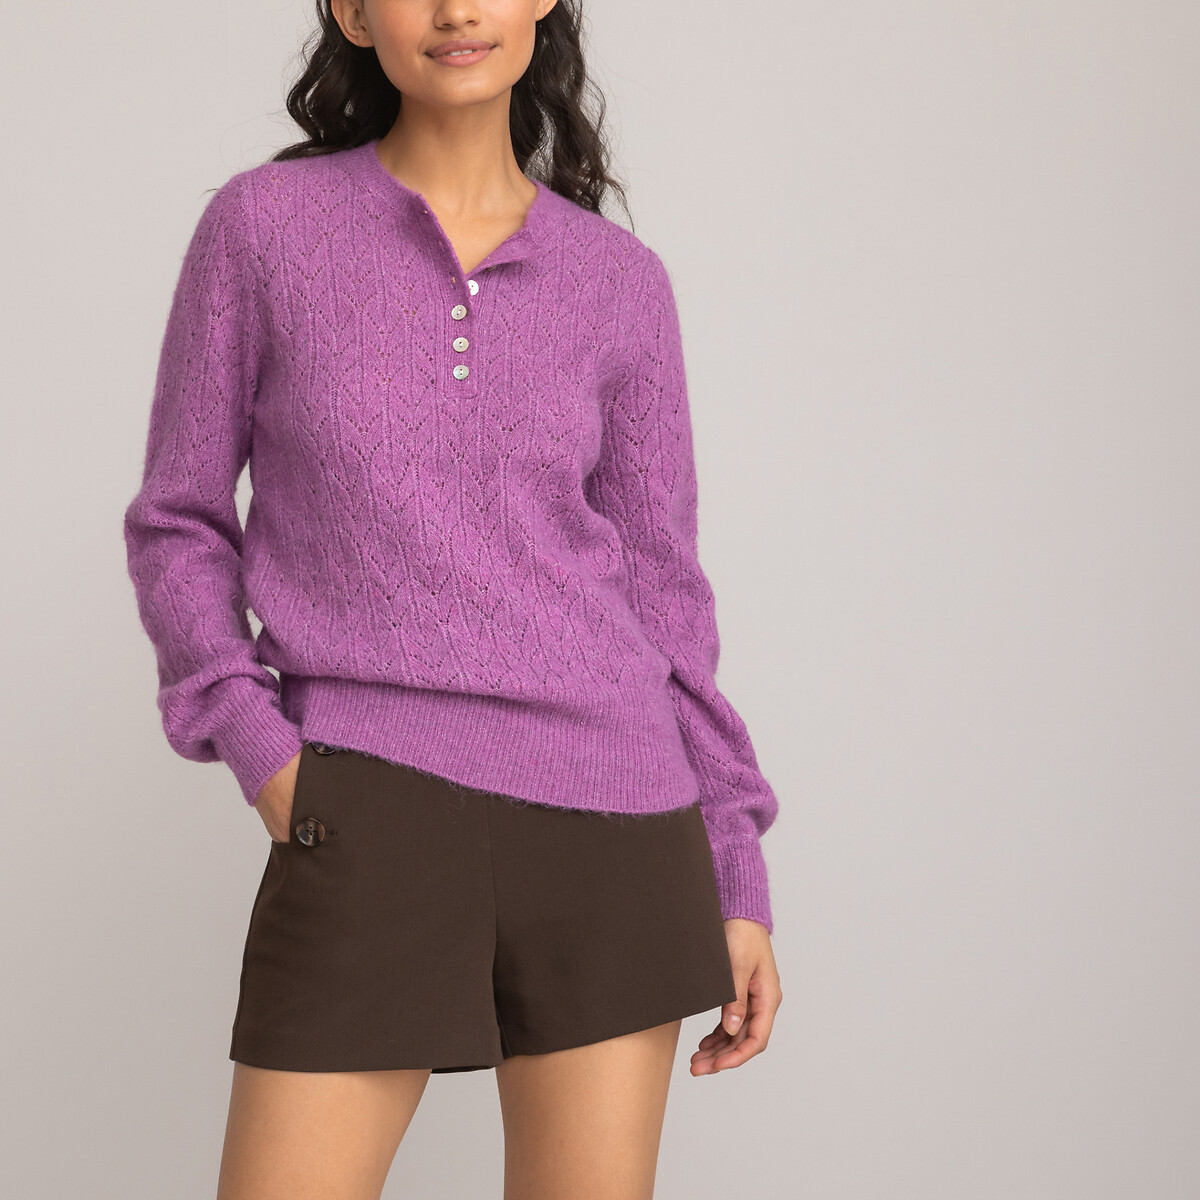 Пуловер с тунисским вырезом из трикотажа пуантель S фиолетовый пуловер с тунисским вырезом из тонкого трикотажа 18 мес 81 см бежевый